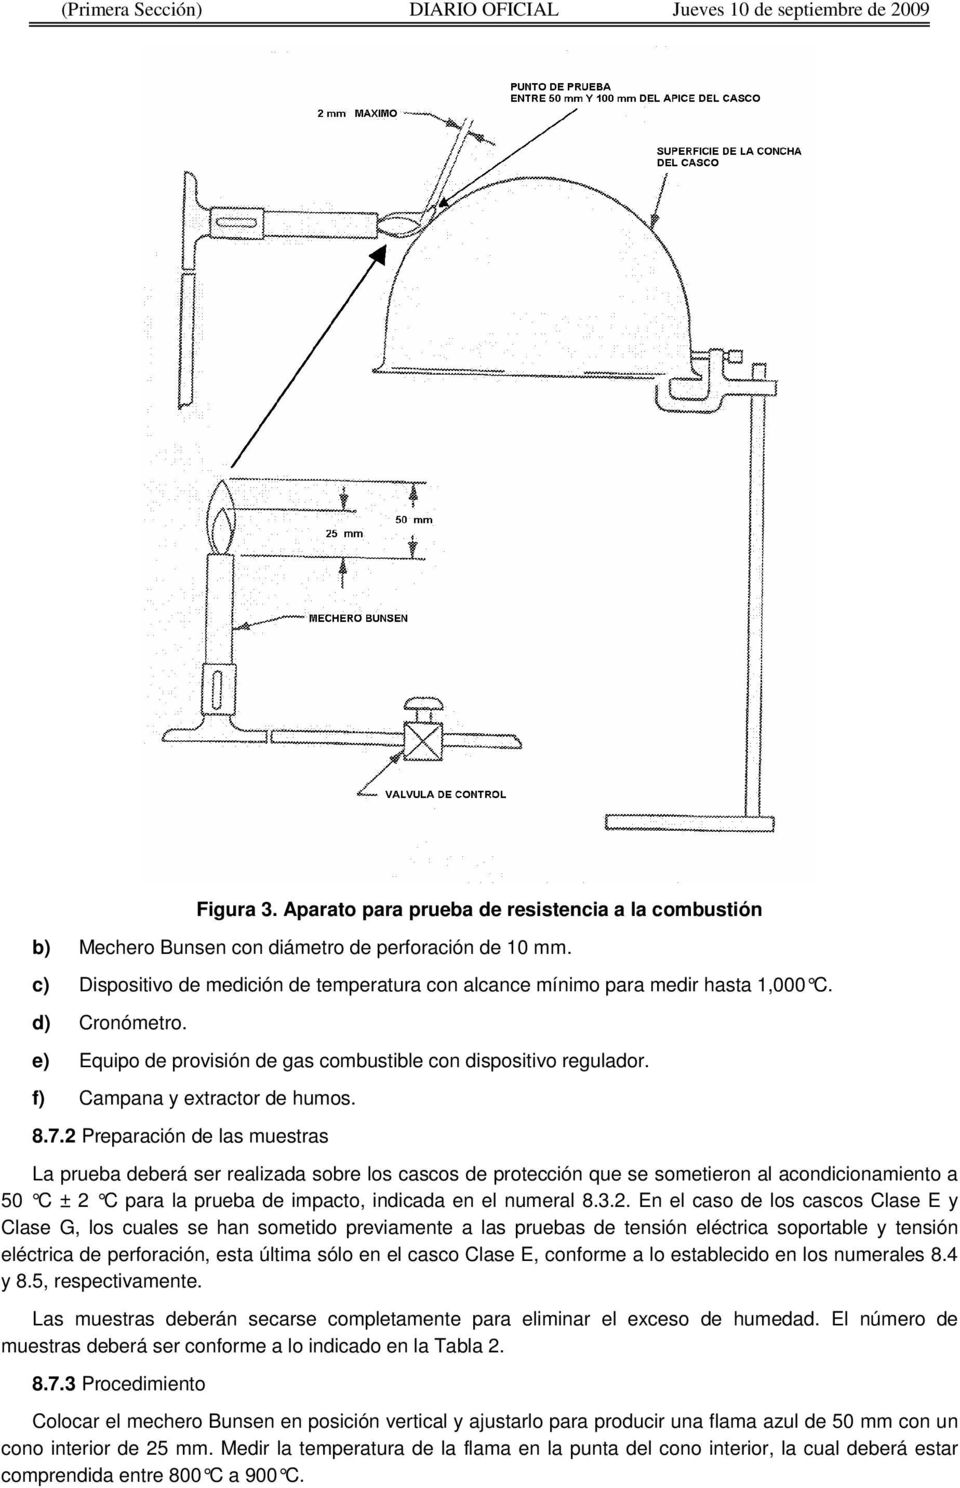 f) Campana y extractor de humos. 8.7.